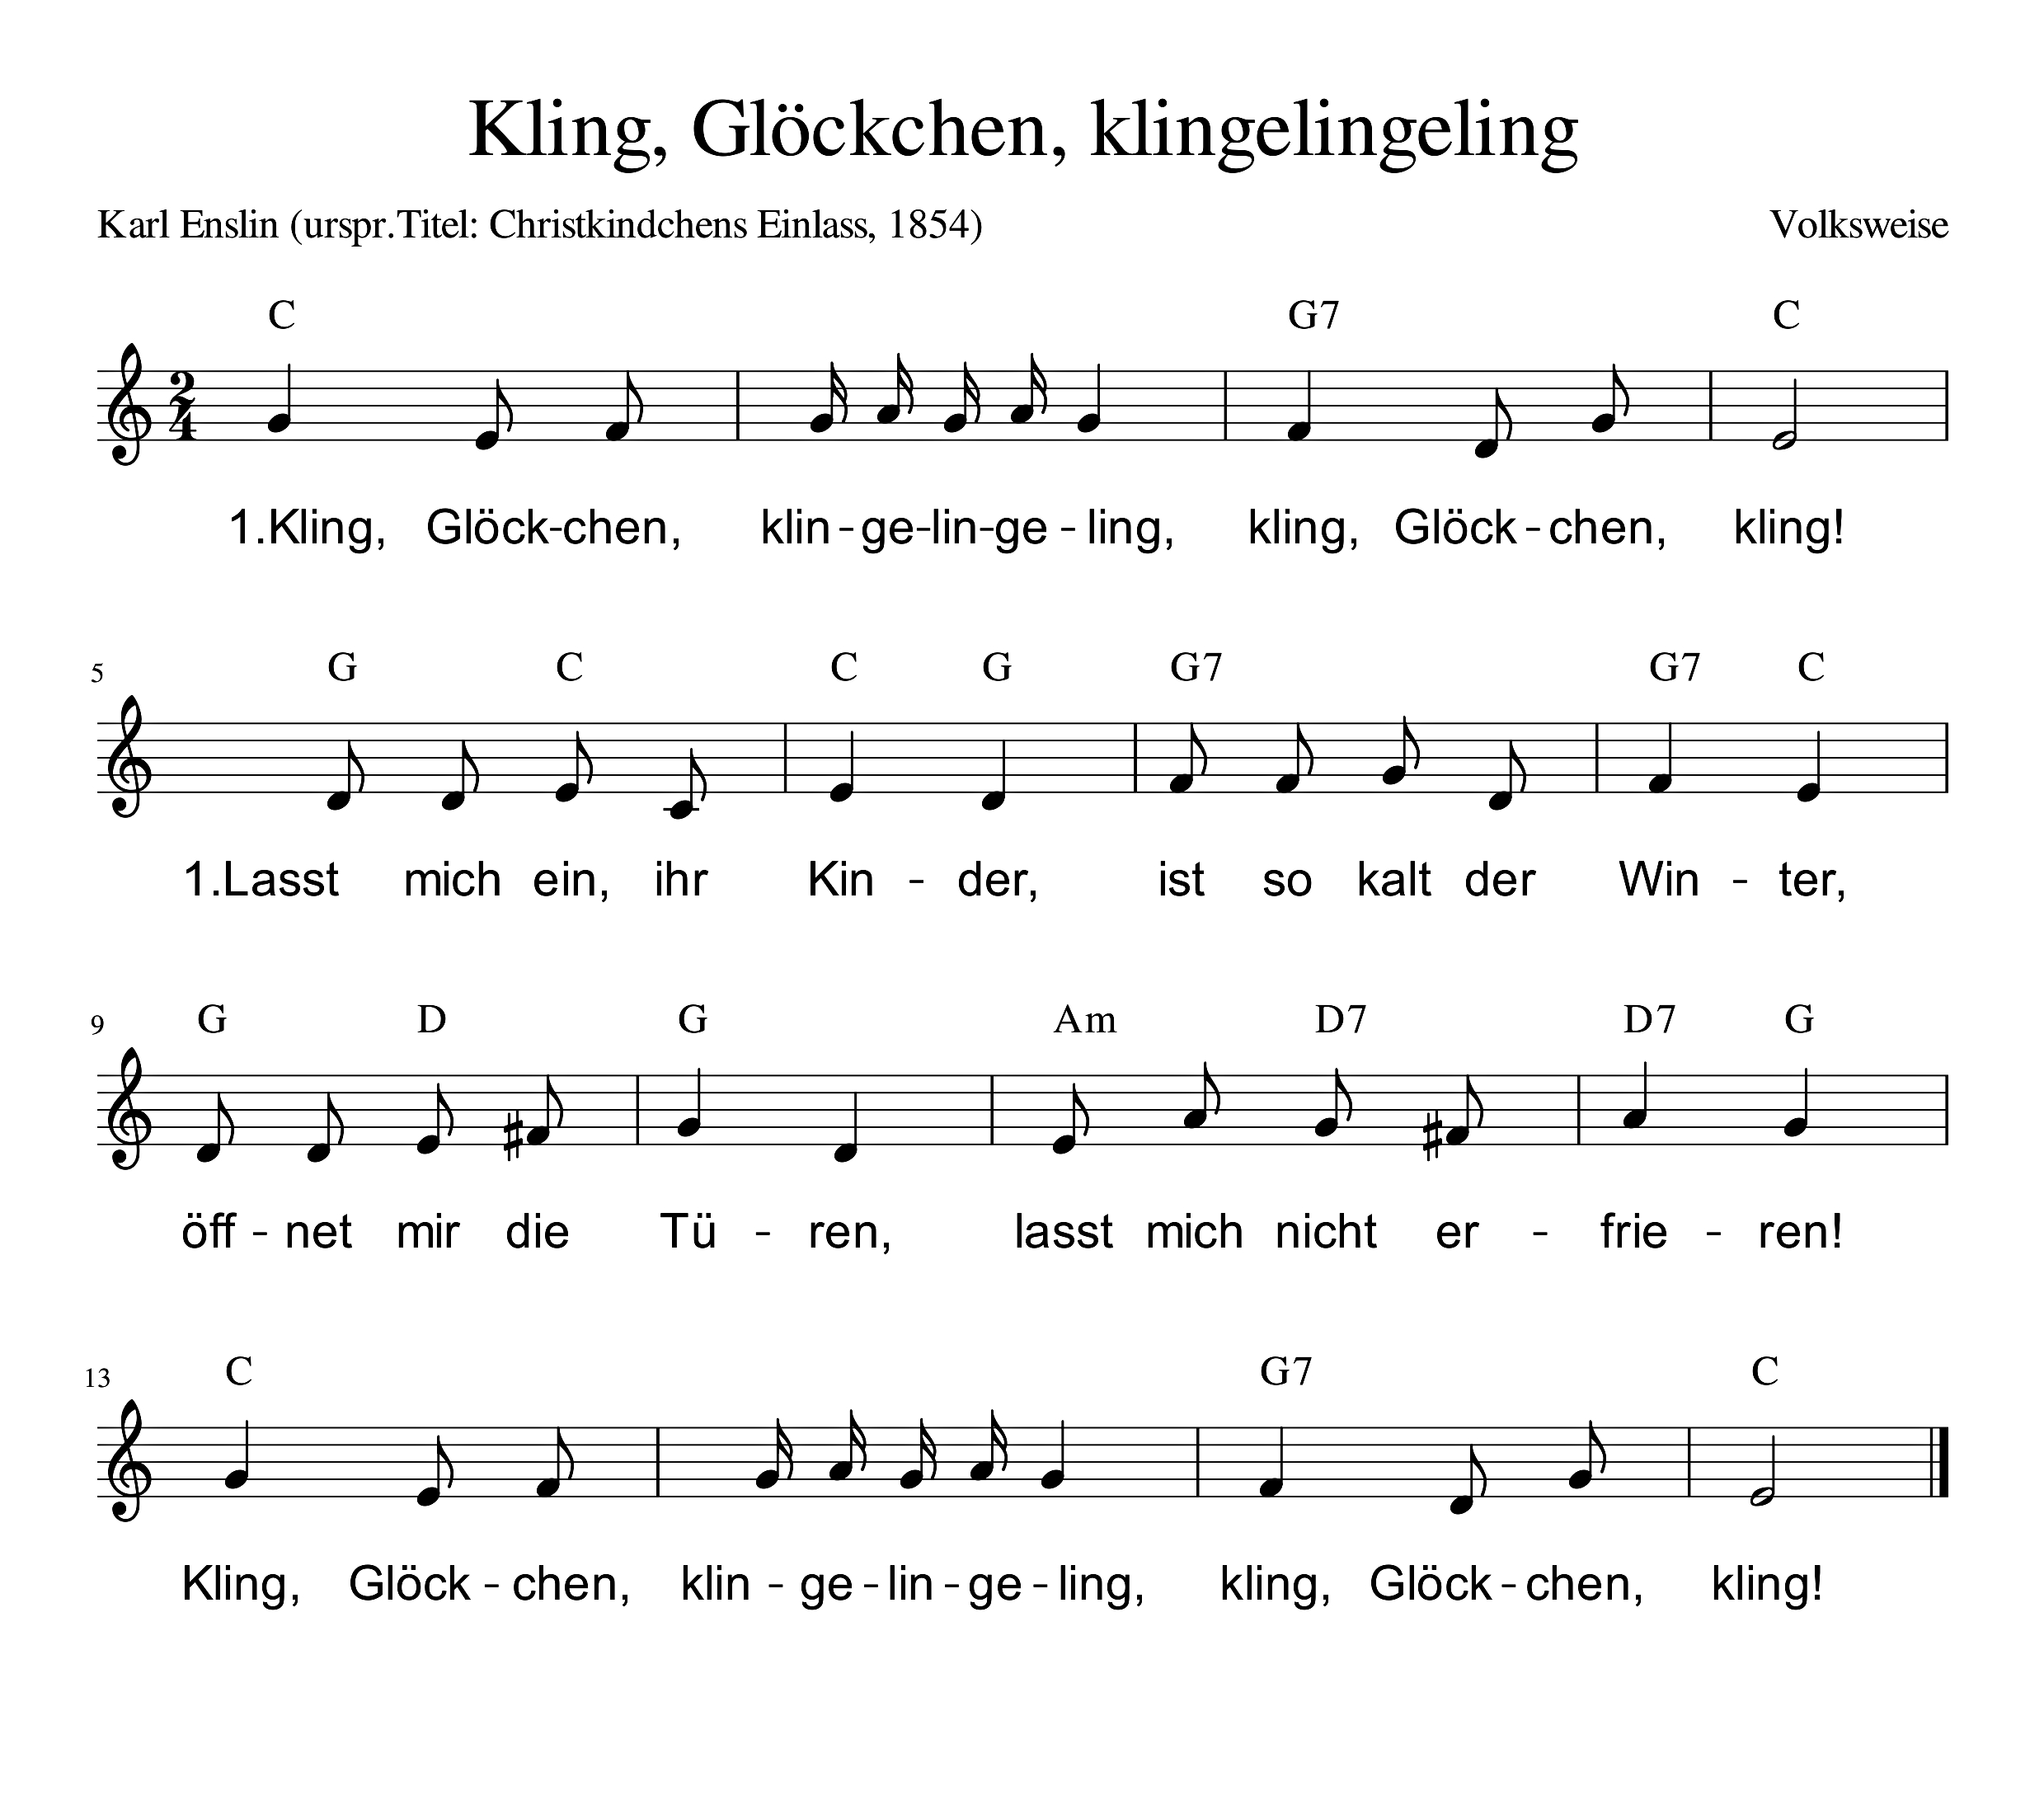 Deutschland-Lese | Kling, Glöckchen, Klingeling für Text Kling Glöckchen Klingelingeling